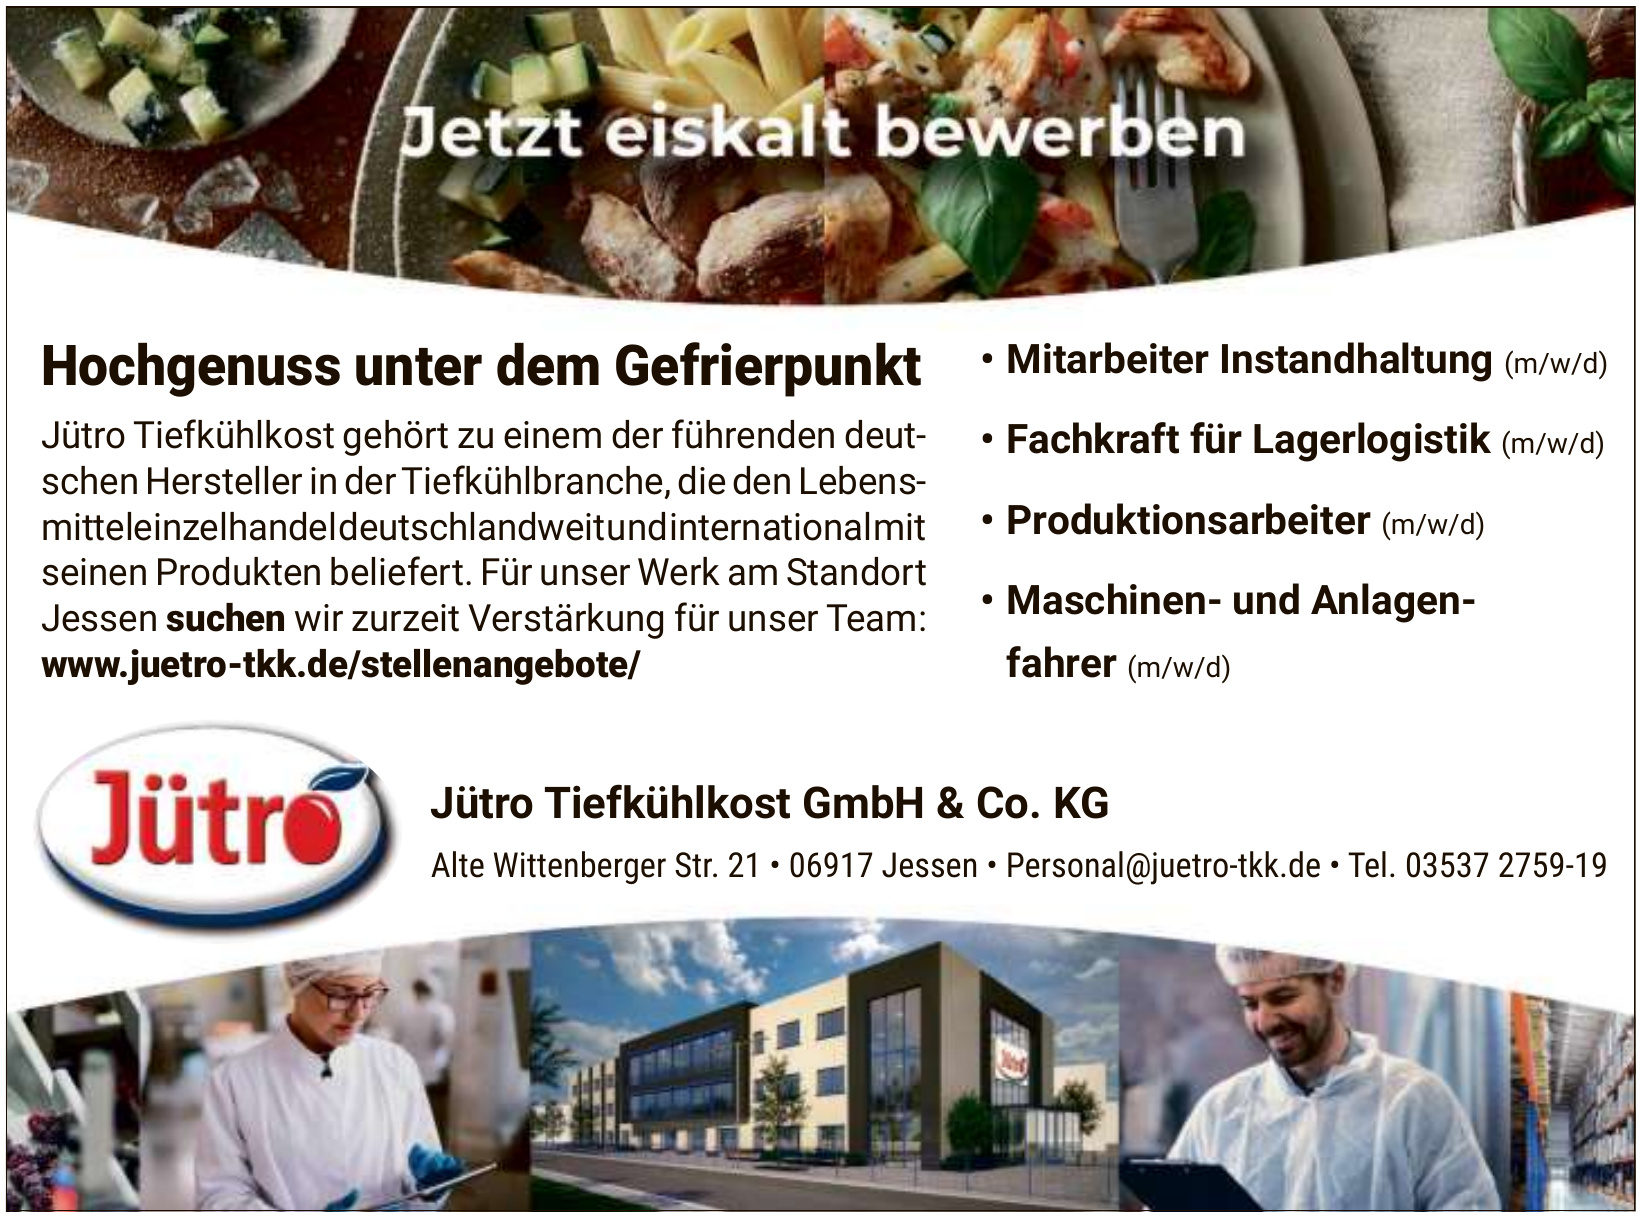 Jütro Tiefkühlkost GmbH & Co. KG